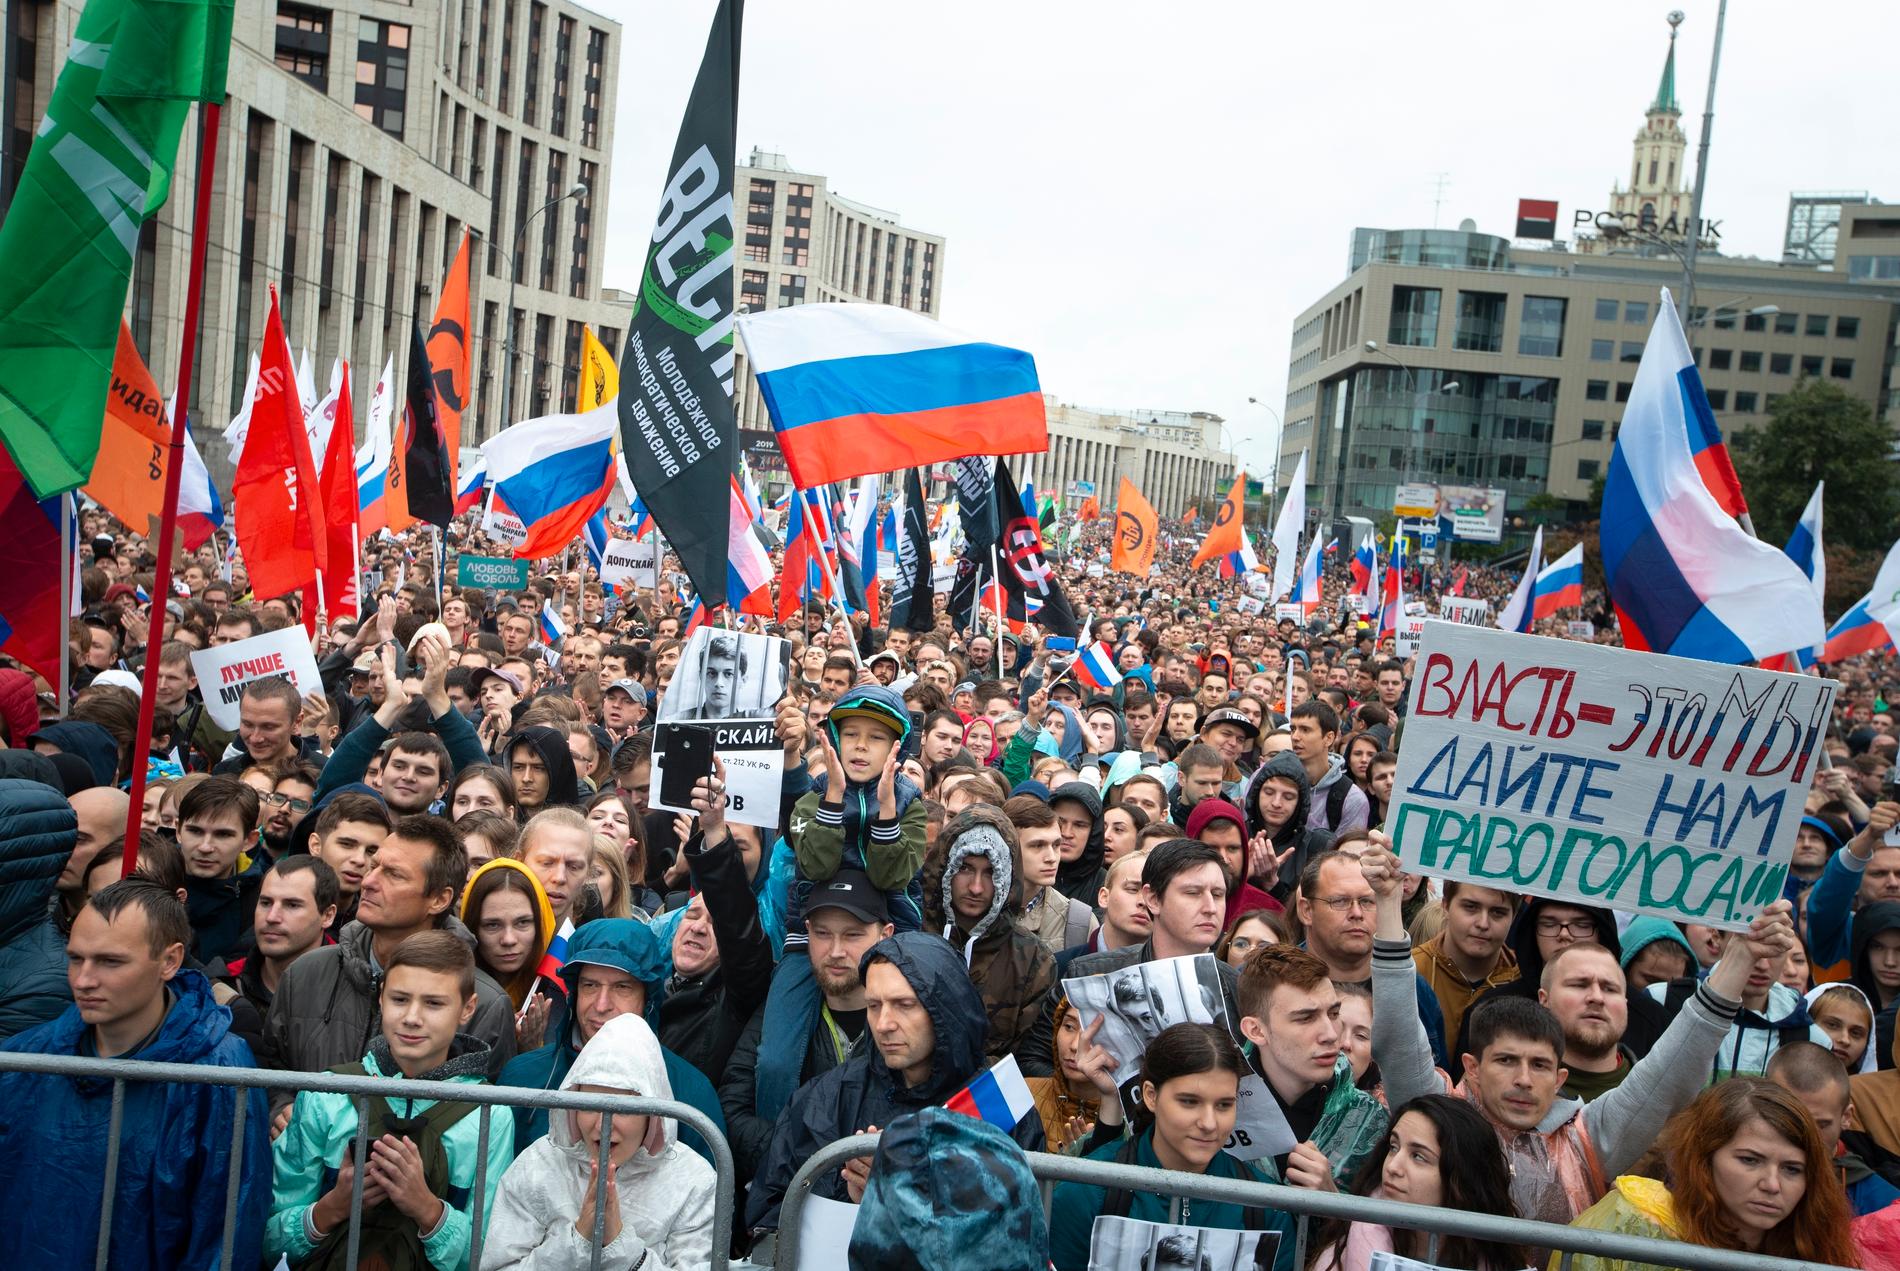 Tiotusentals personer samlades till regimkritiska protester i Moskva på lördagen.